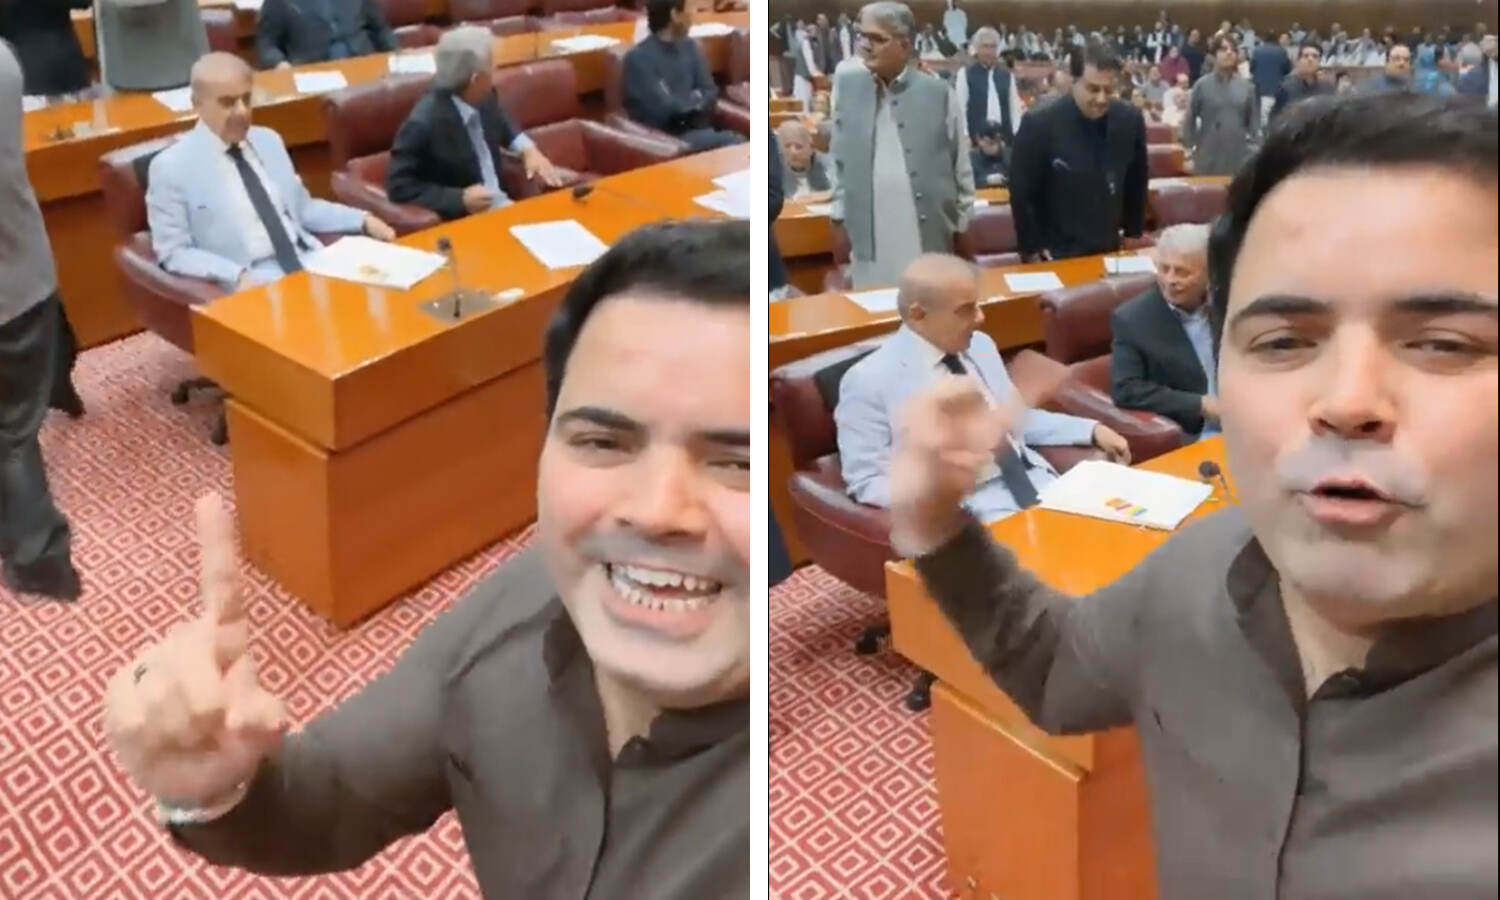 Shehbaz Sharif News : ये है अंतर्राष्ट्रीय भिखारी..., जब पाकिस्तानी संसद में शहबाज शरीफ के सामने चिल्लाया इमरान की पार्टी का सांसद, देखें वीडियो